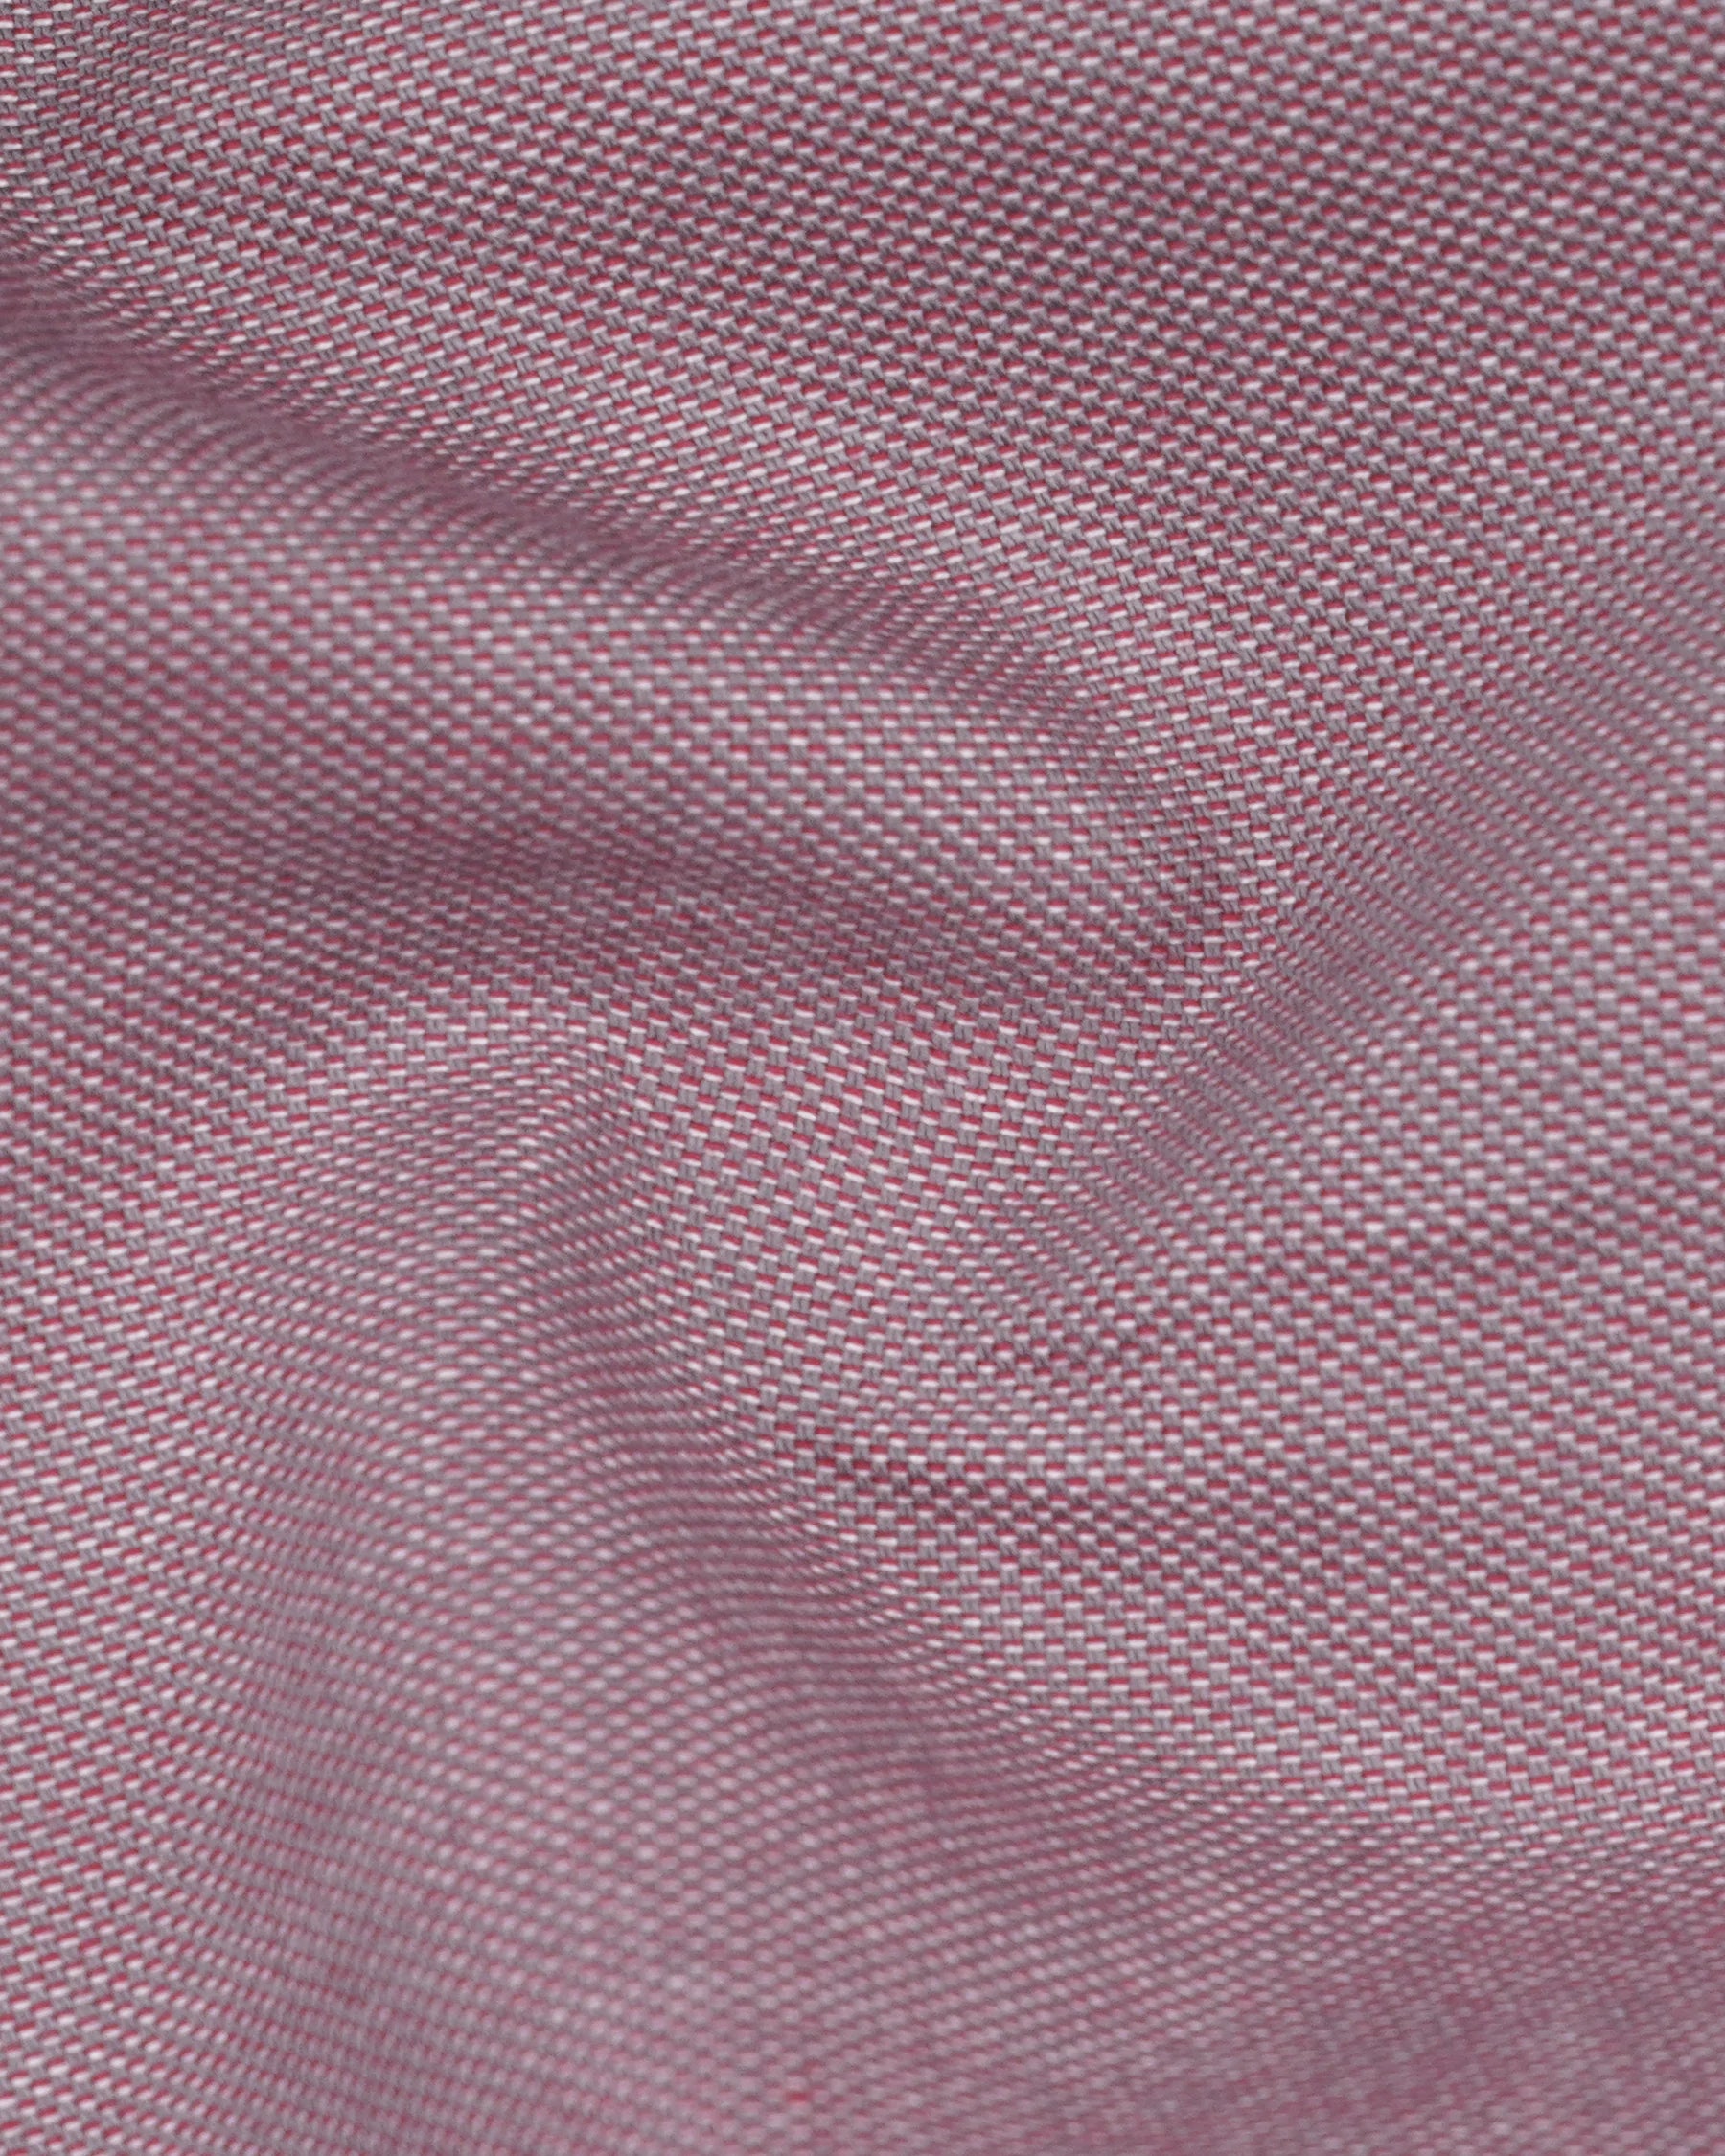 Cinereous Pink Premium Cotton Waistcoat V2146-36, V2146-38, V2146-40, V2146-42, V2146-44, V2146-46, V2146-48, V2146-50, V2146-52, V2146-54, V2146-56, V2146-58, V2146-60